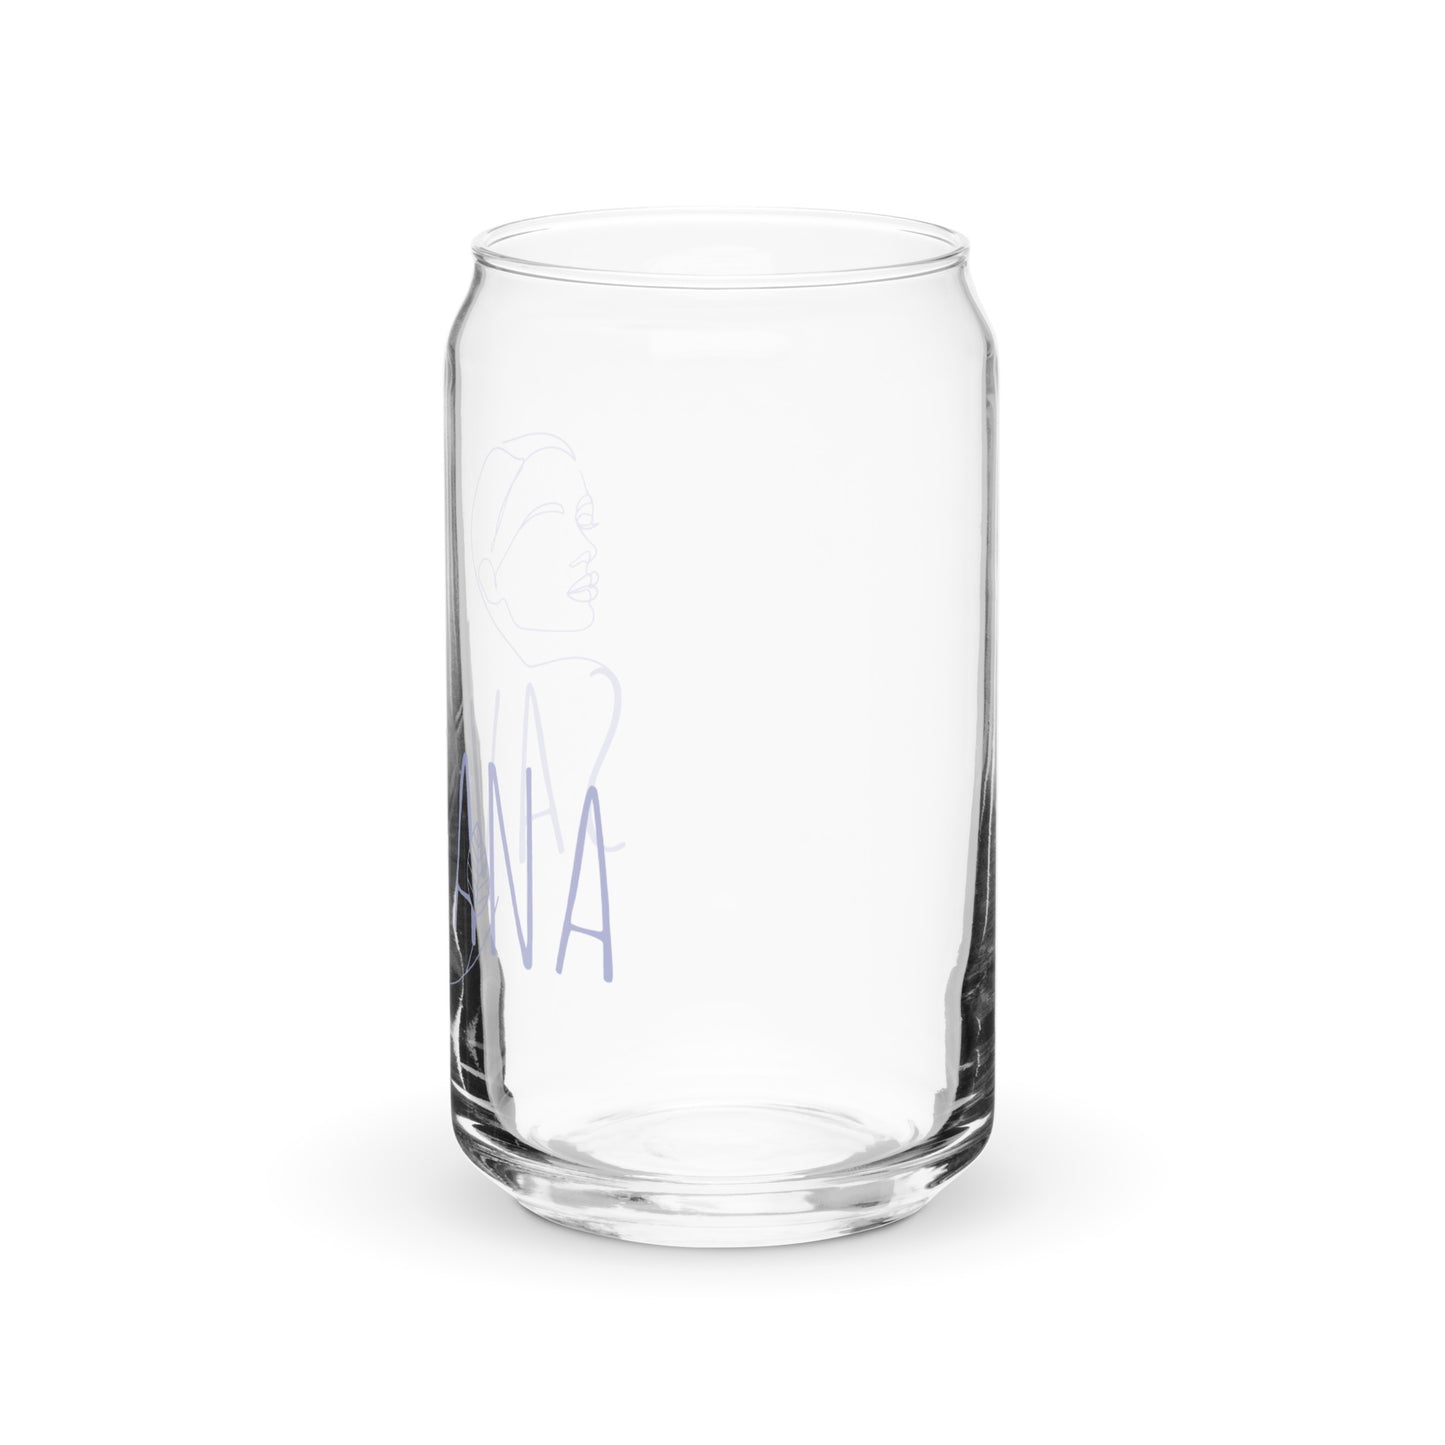 Savasana Can-shaped glass